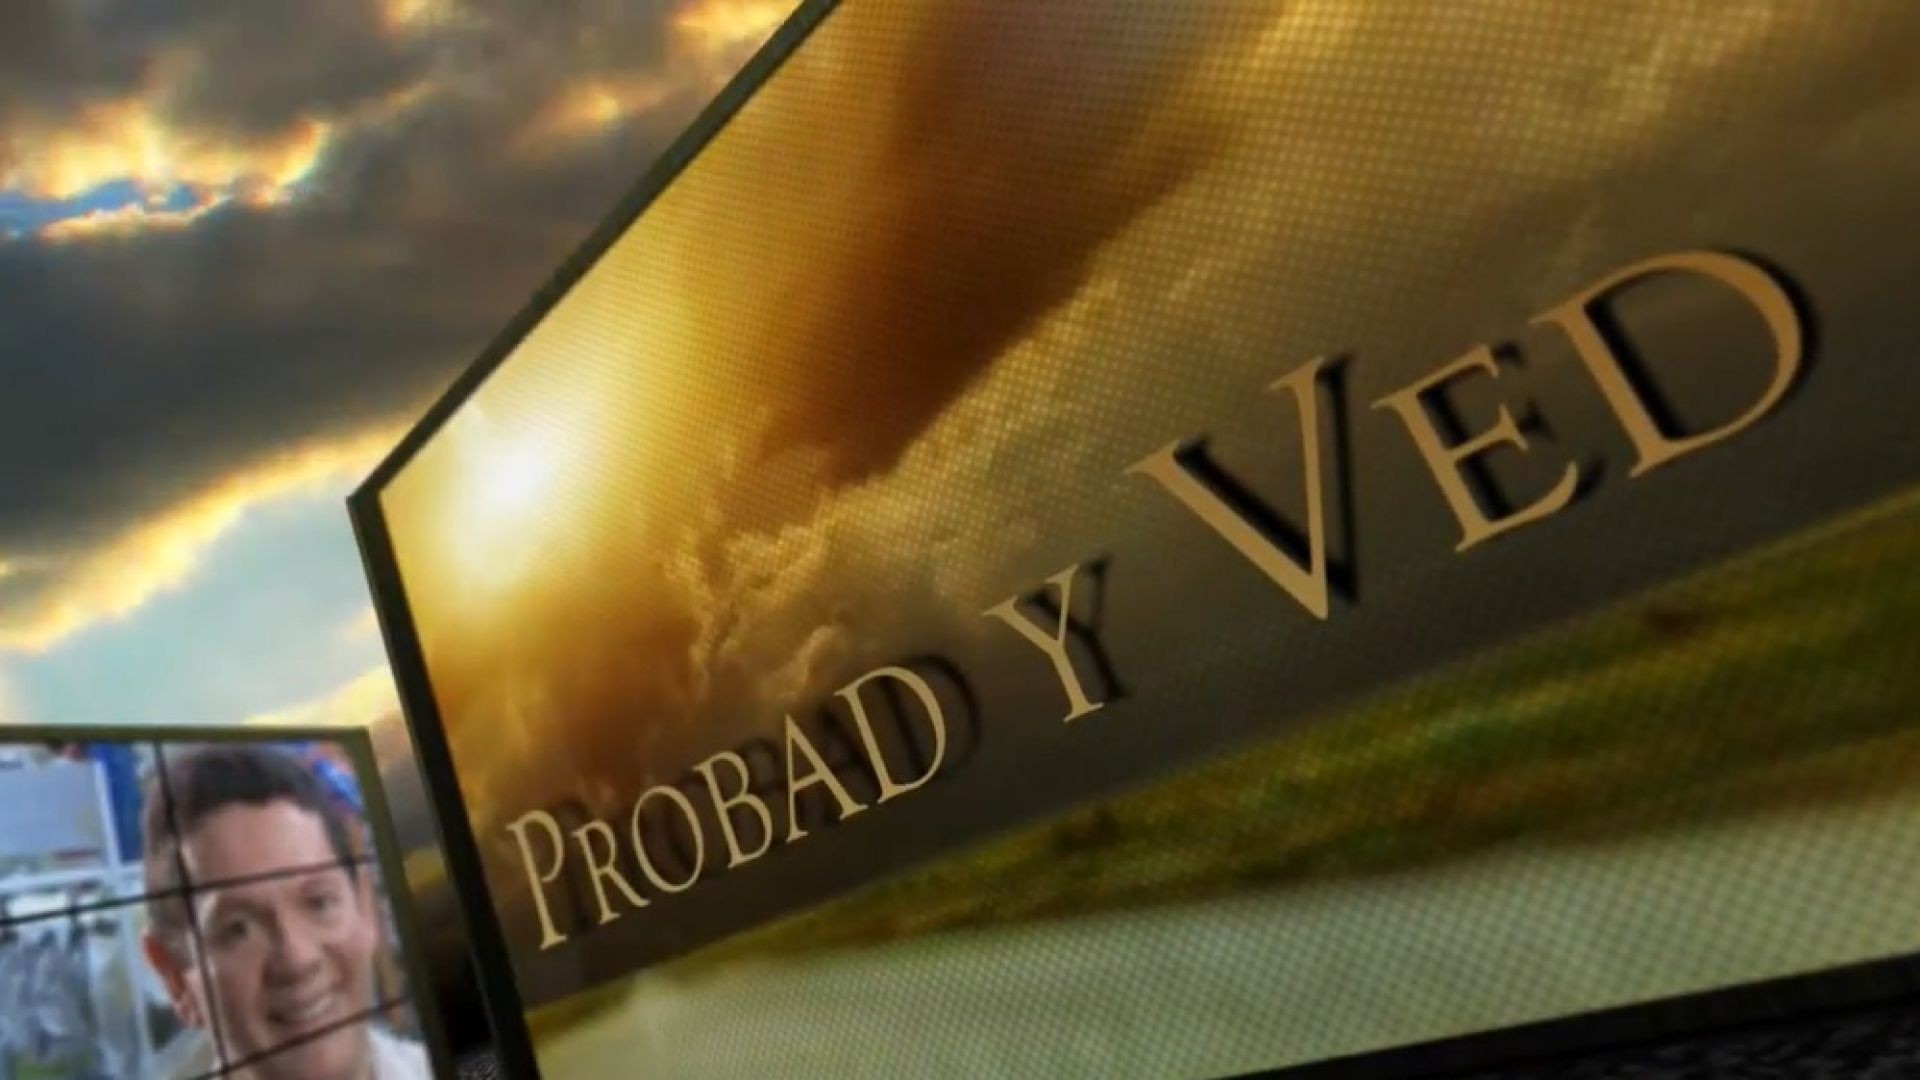 Probad y Ved 2013 - El hijo prodigo - 30/Nov